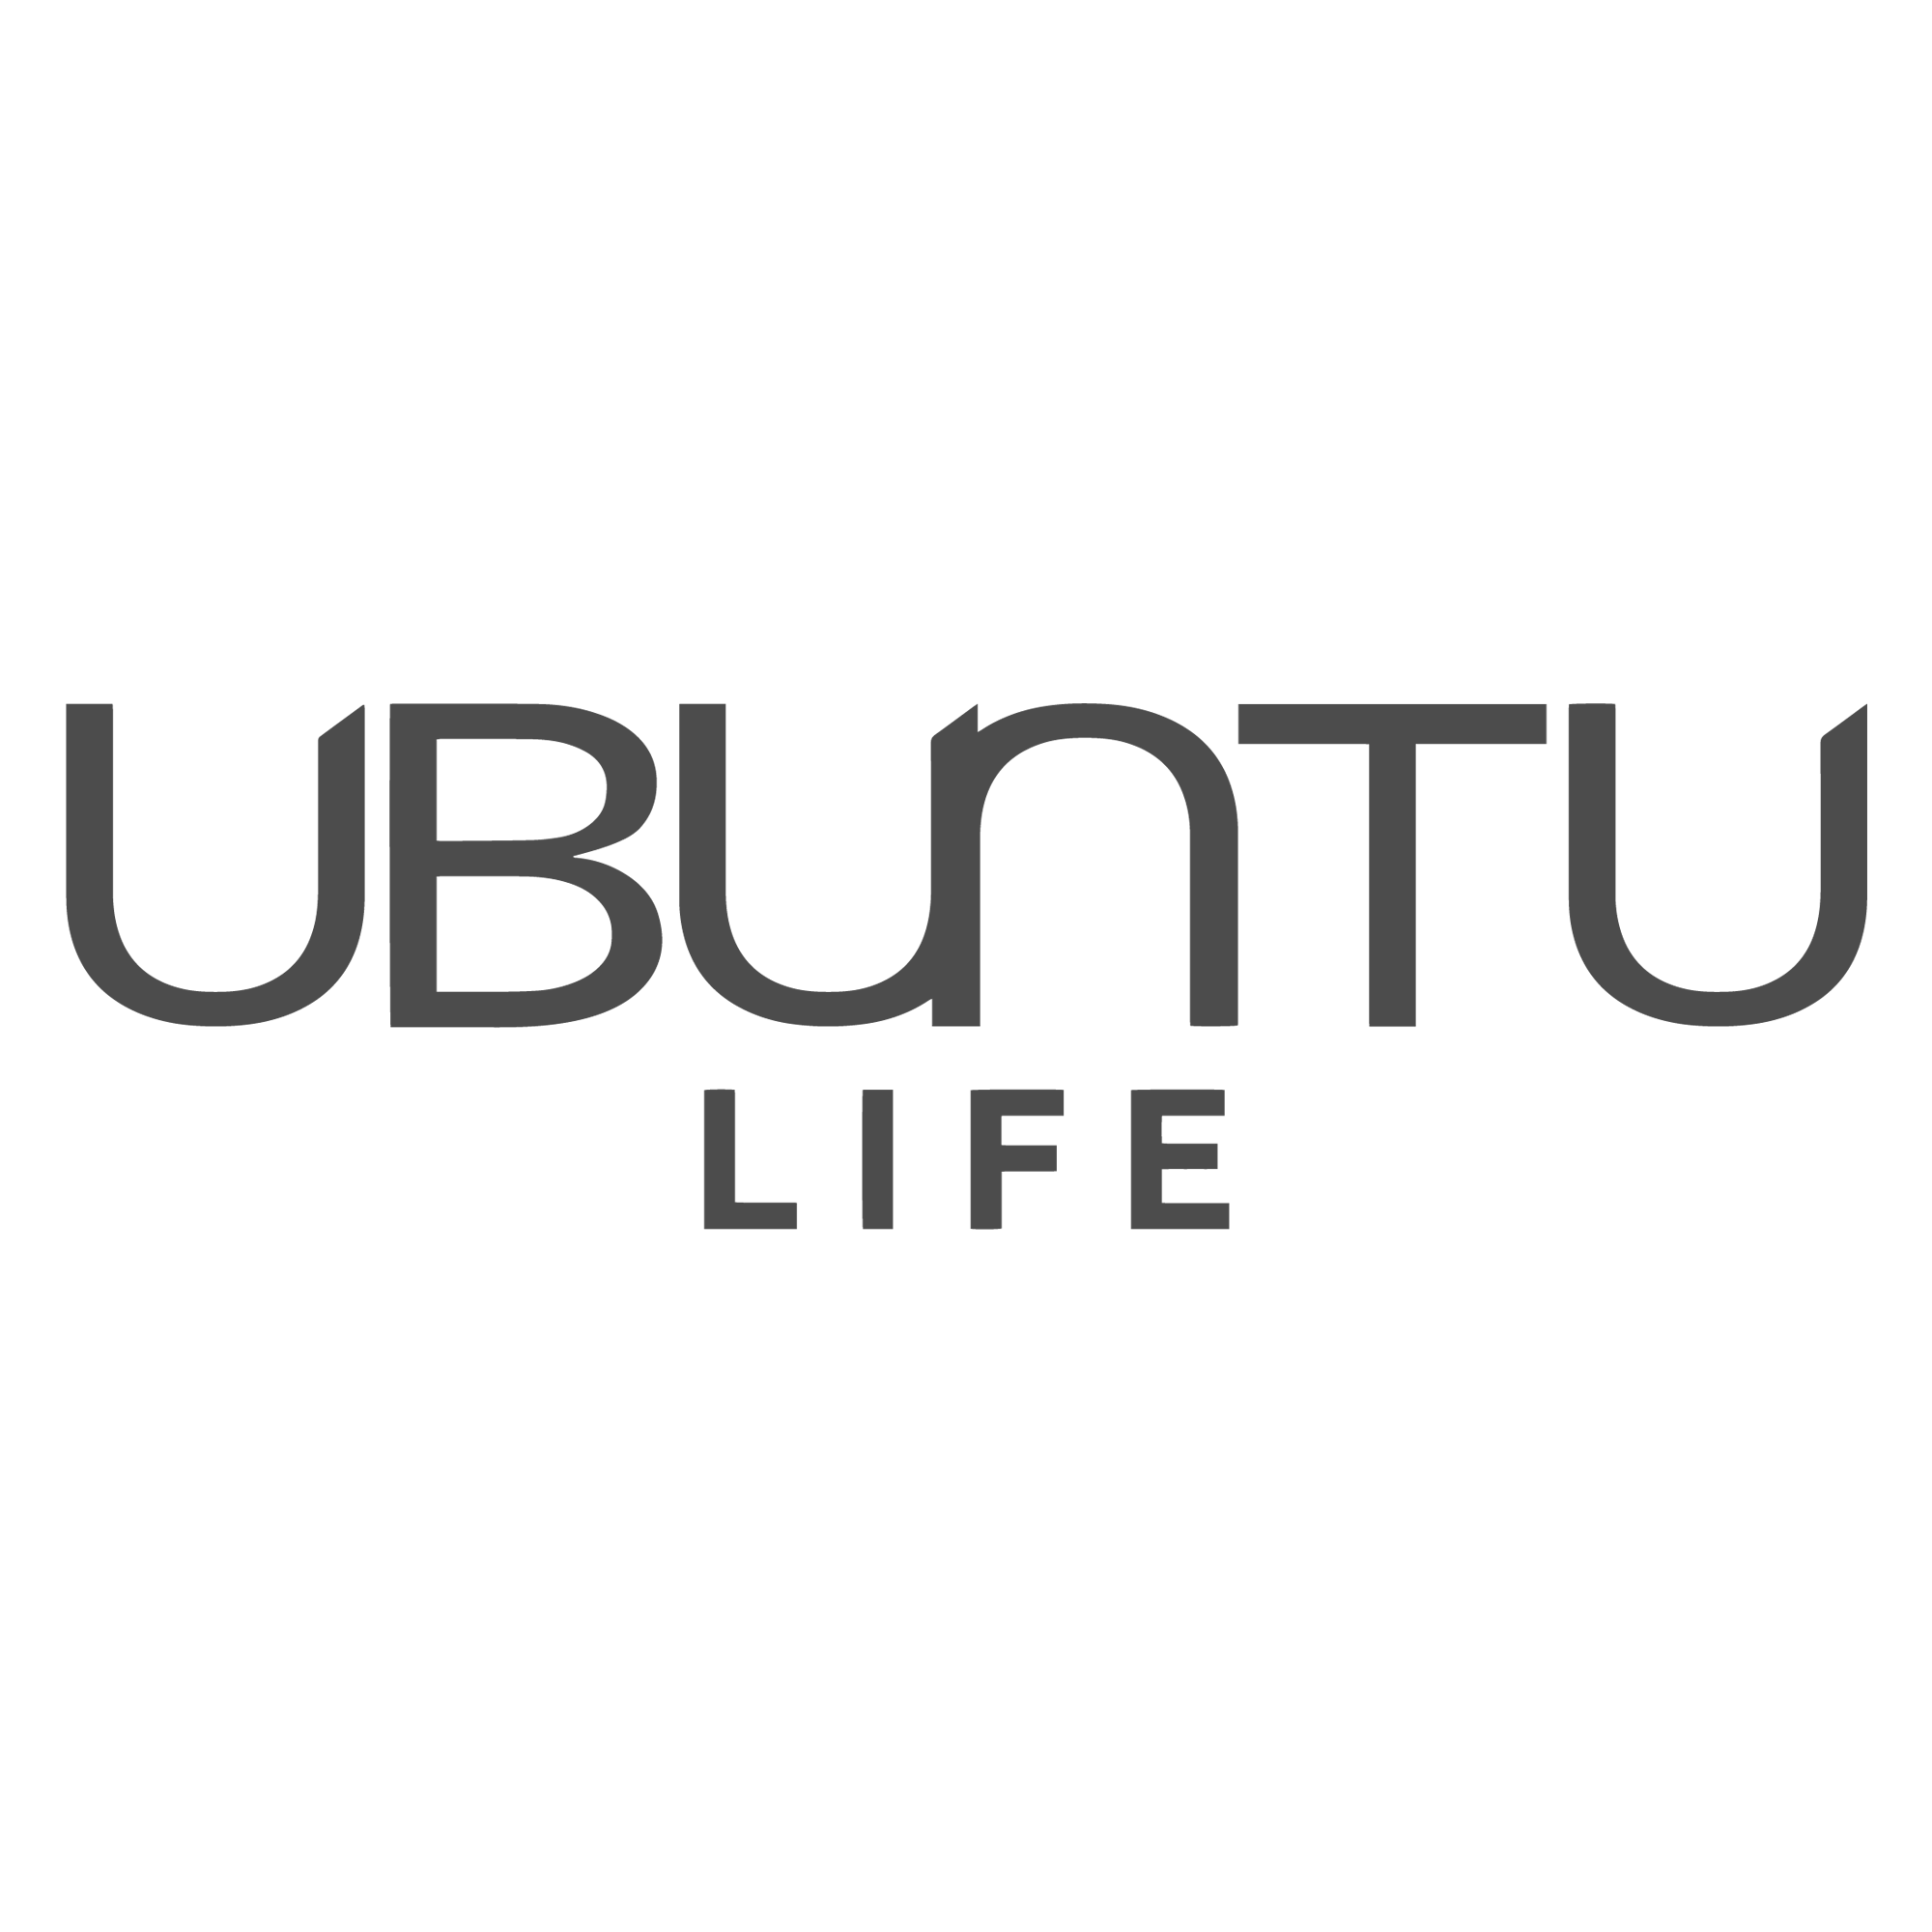 Ubuntu Life